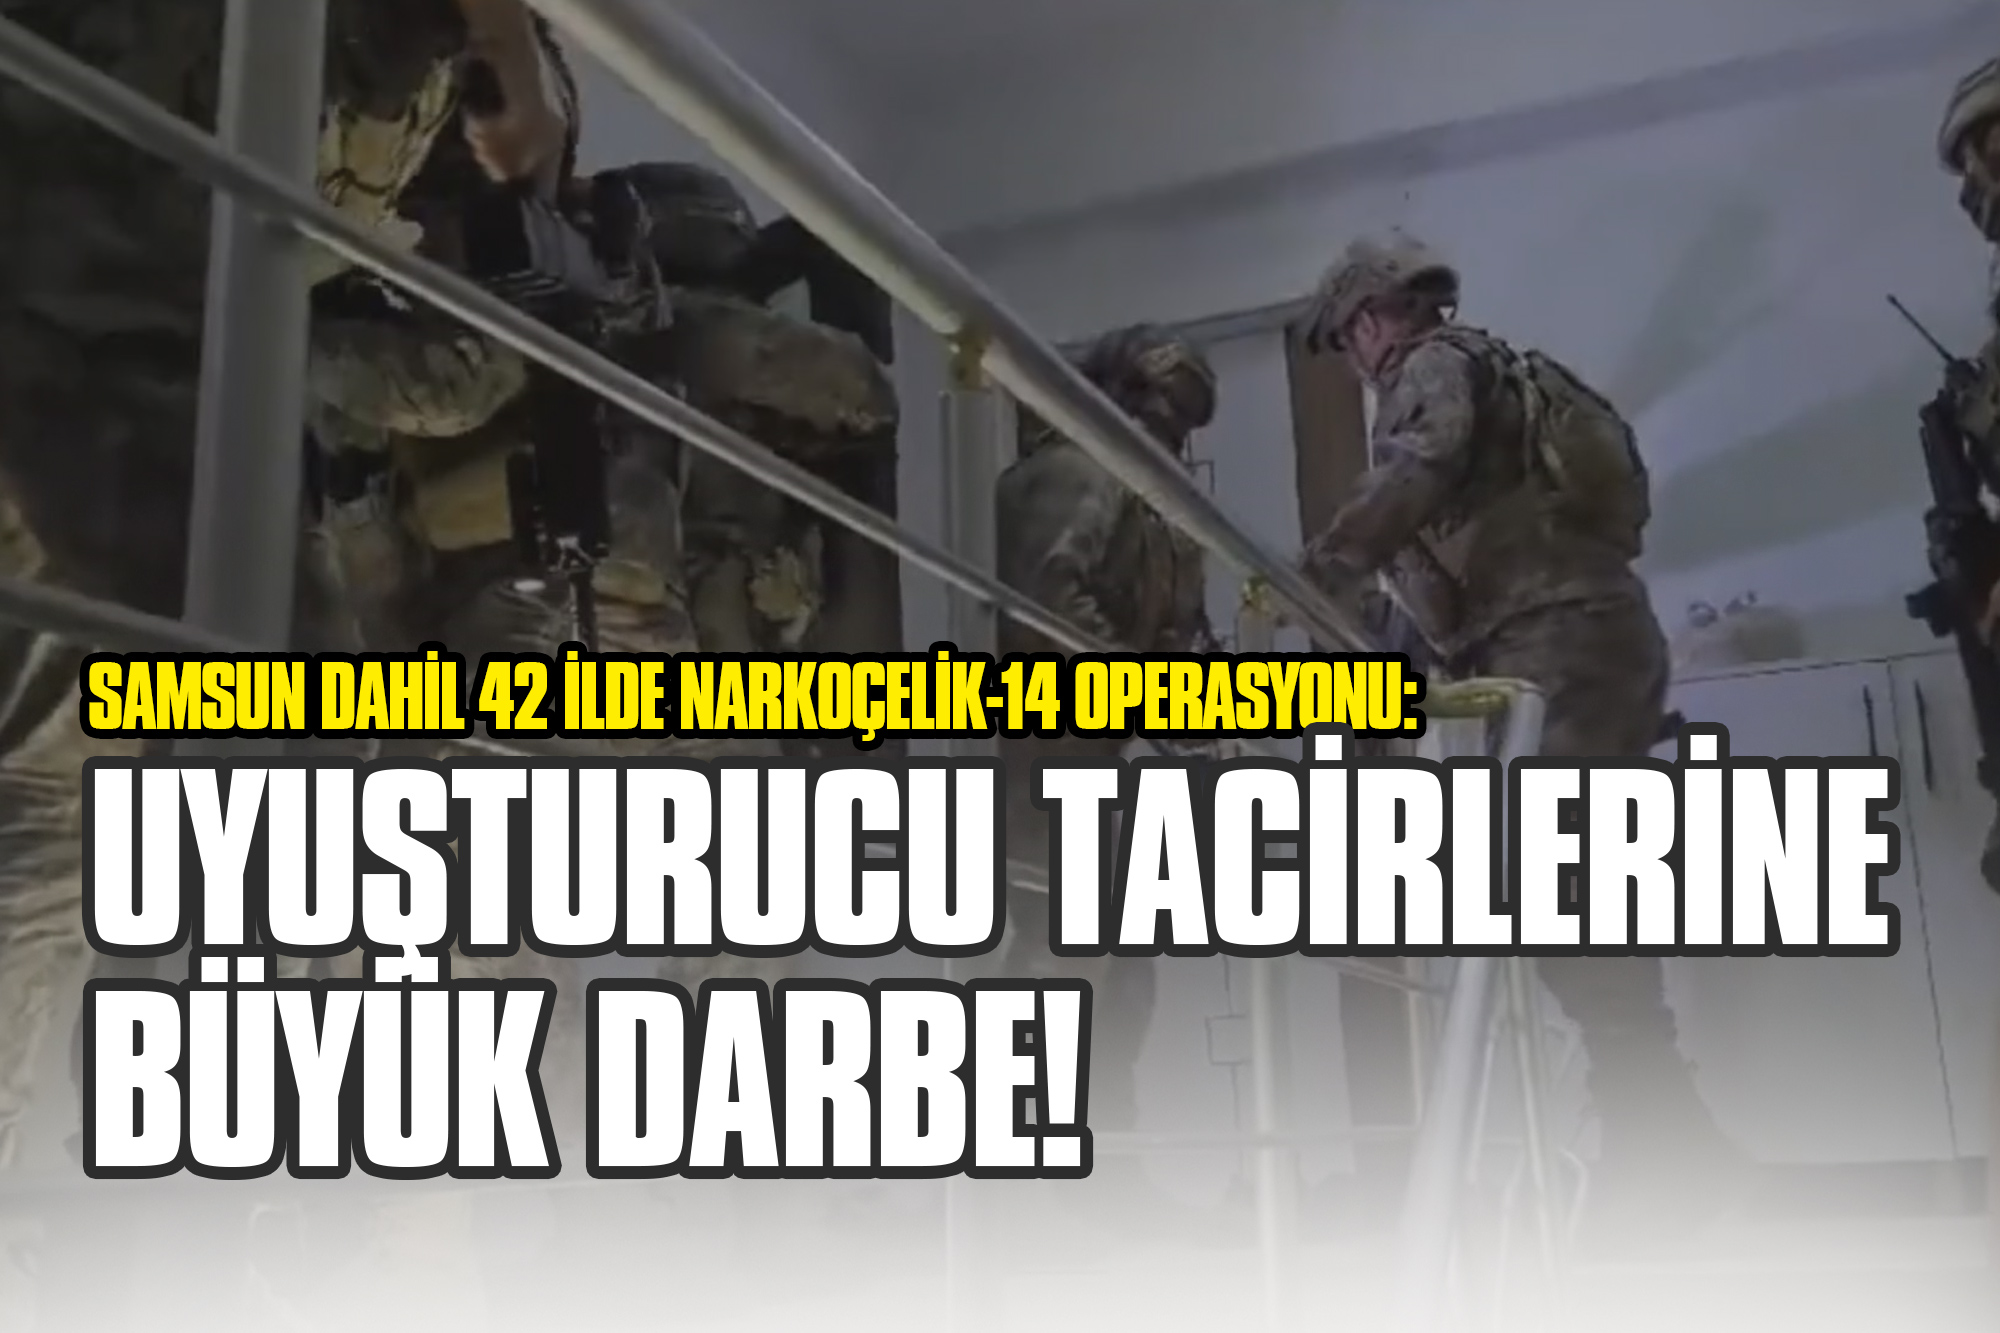 Samsun Dahil 42 İlde Narkoçelik-14 Operasyonu: Uyuşturucu Tacirlerine Büyük Darbe!